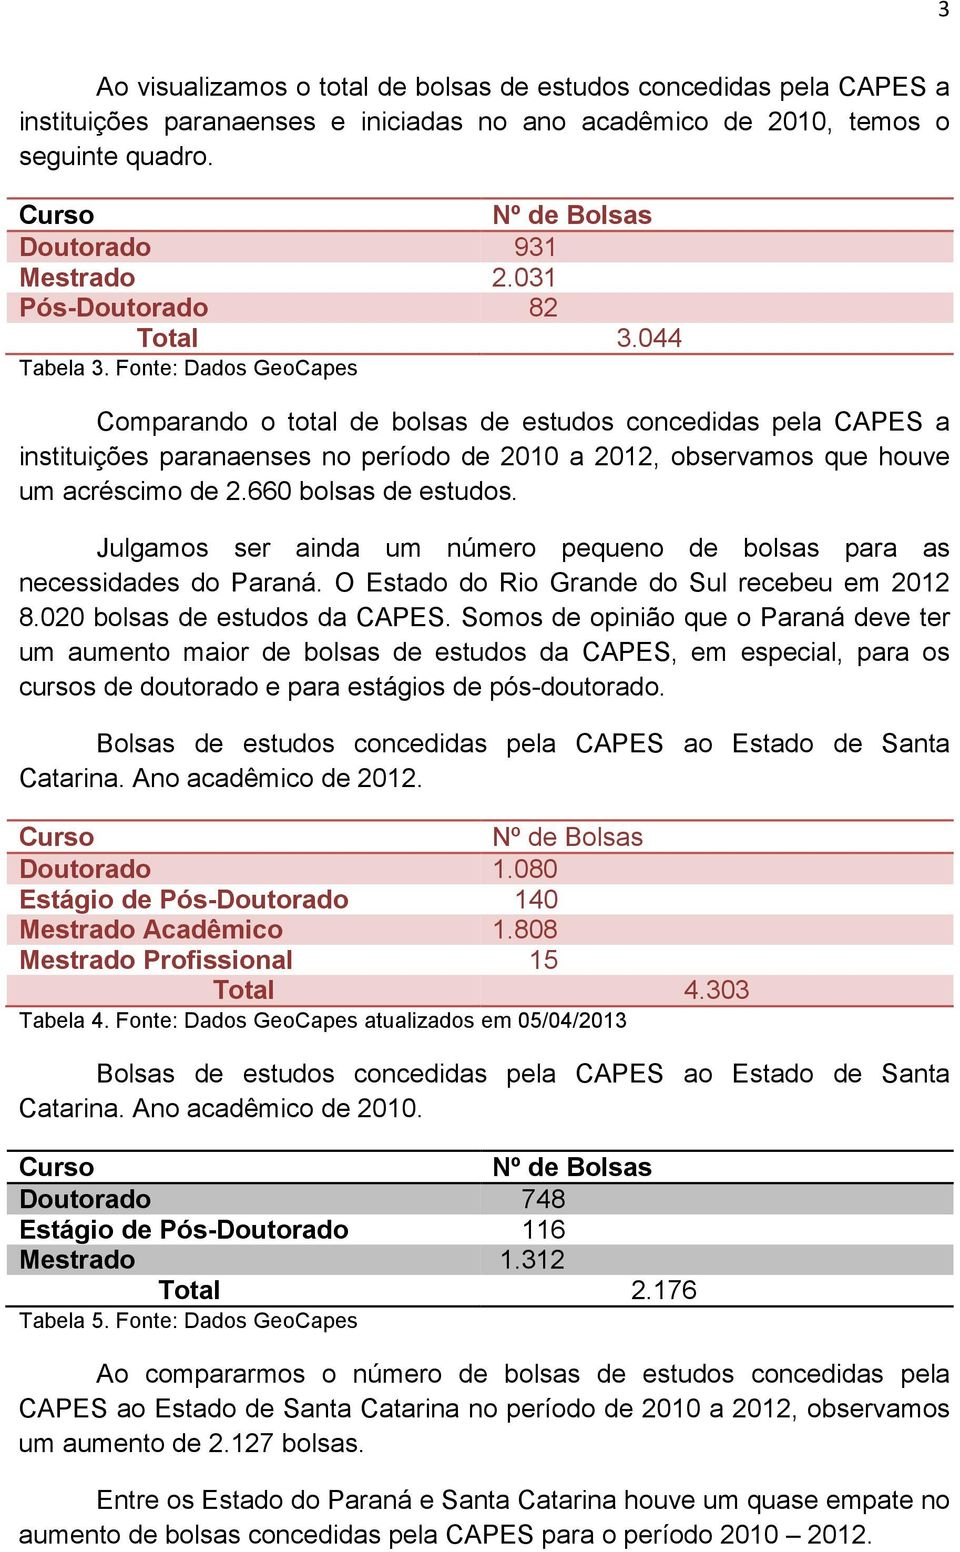 Fonte: Dados GeoCapes Comparando o total de bolsas de estudos concedidas pela CAPES a instituições paranaenses no período de 2010 a 2012, observamos que houve um acréscimo de 2.660 bolsas de estudos.